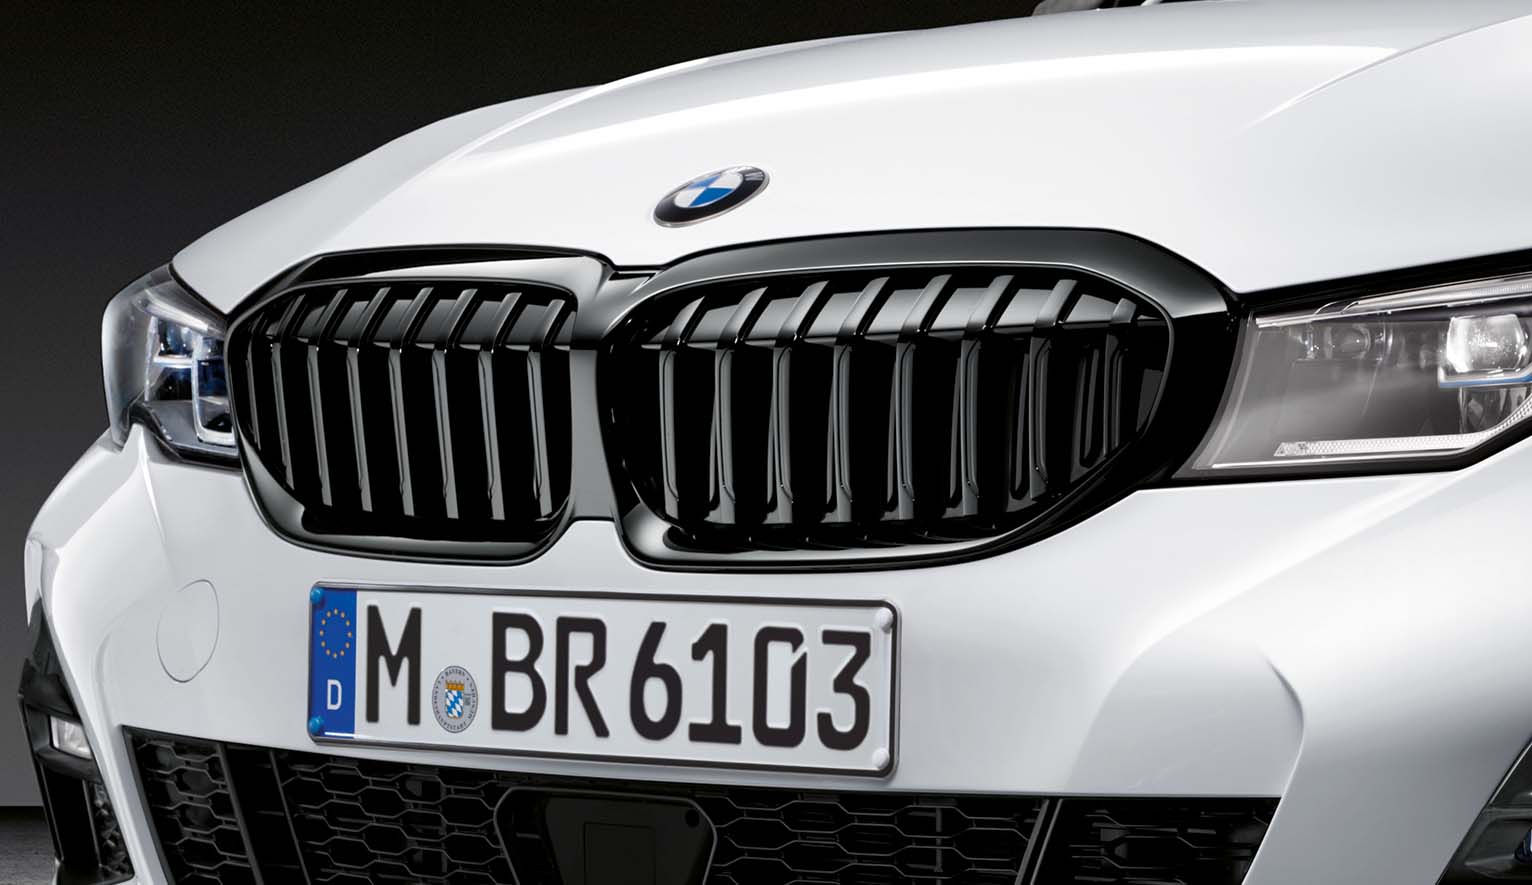 BMW Diffusorfolie matt schwarz für Nierenrahmen in Schwarz 3er G20 G21